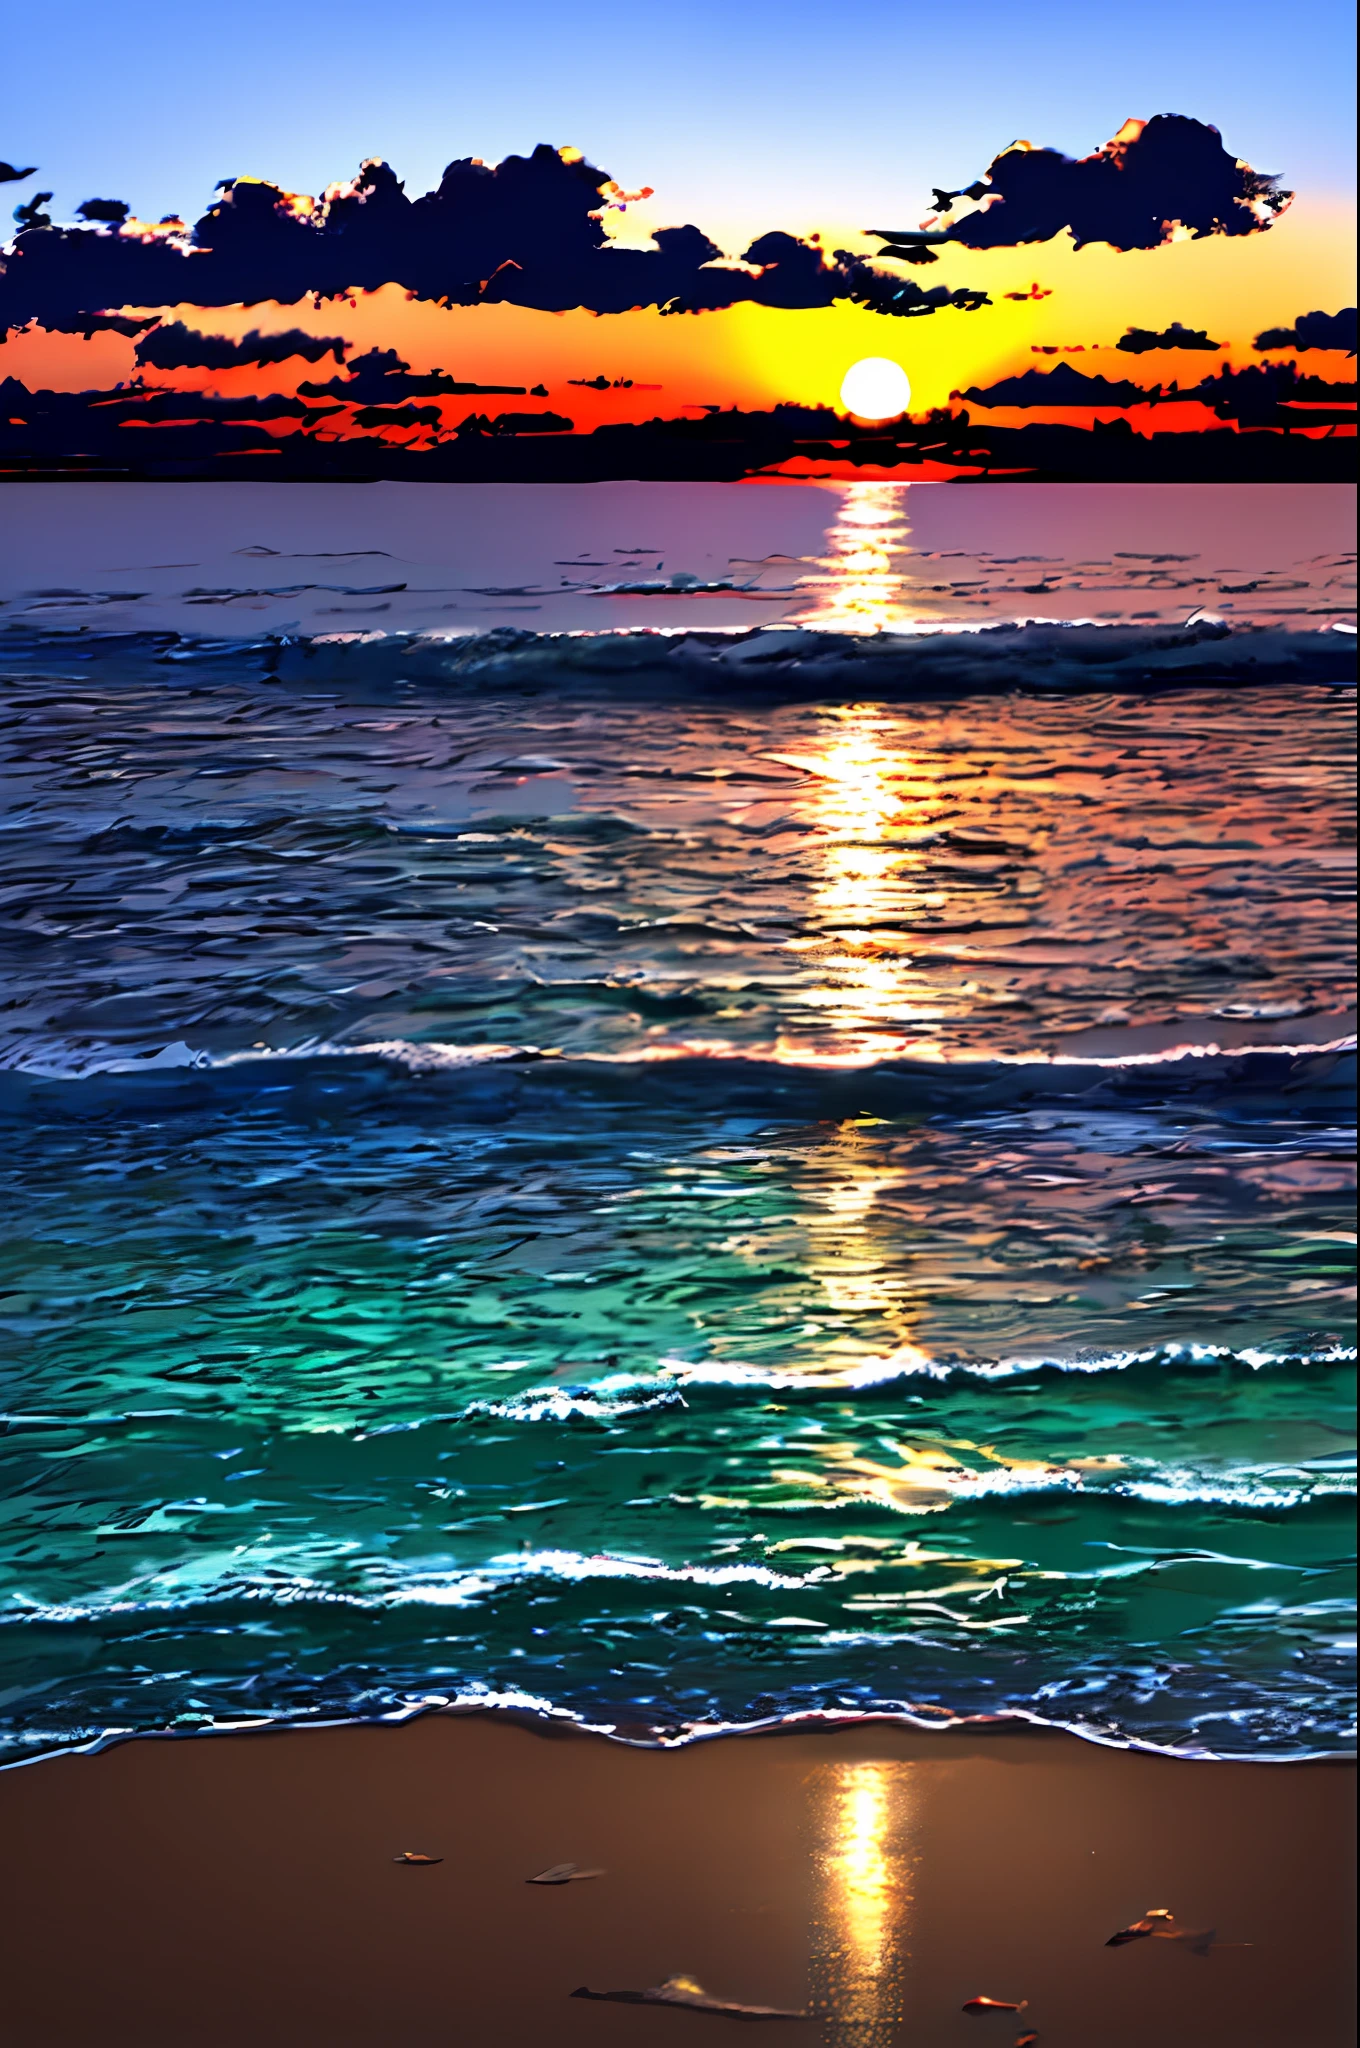 ينعكس ضوء الشمس عند غروب الشمس بشكل خيالي من شاطئ البحر وينتشر、صبي يراقب الوضع على خلفية الأضواء المتطايرة